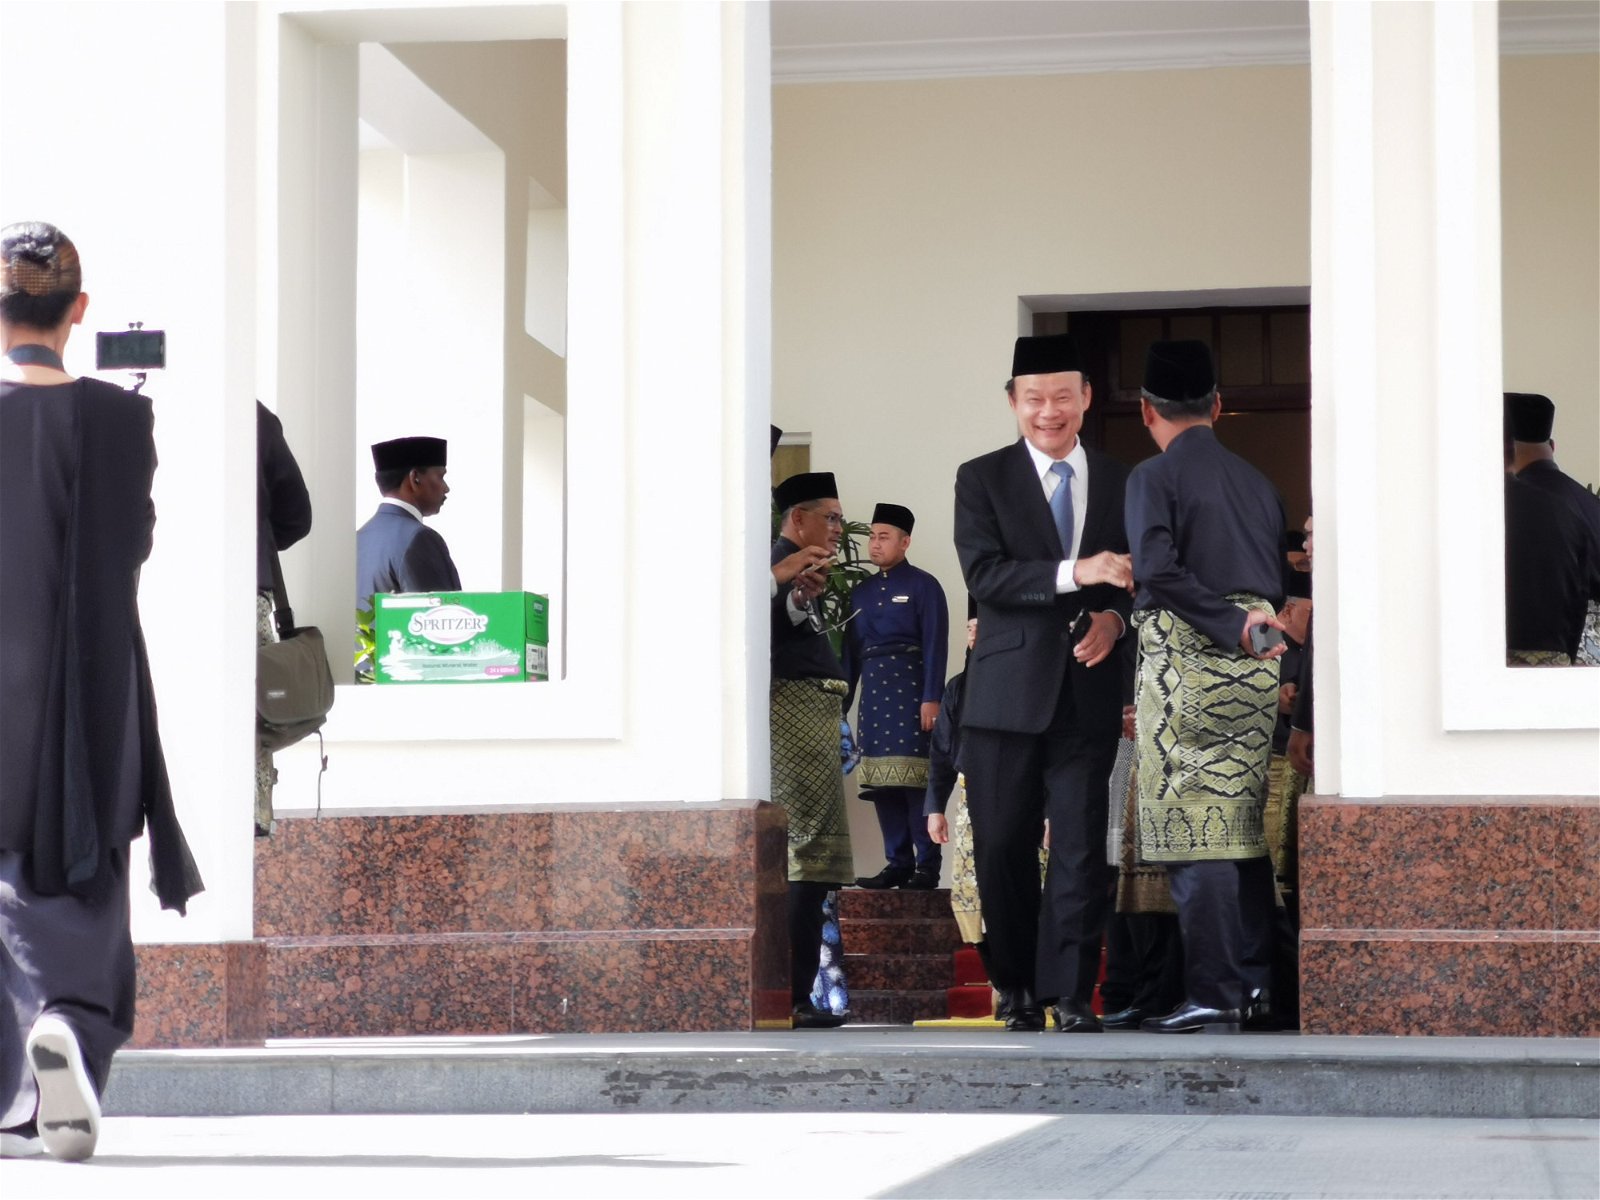 霹雳州议会议长拿督倪可汉在大臣宣誓仪式结束后离开王宫礼仪厅。